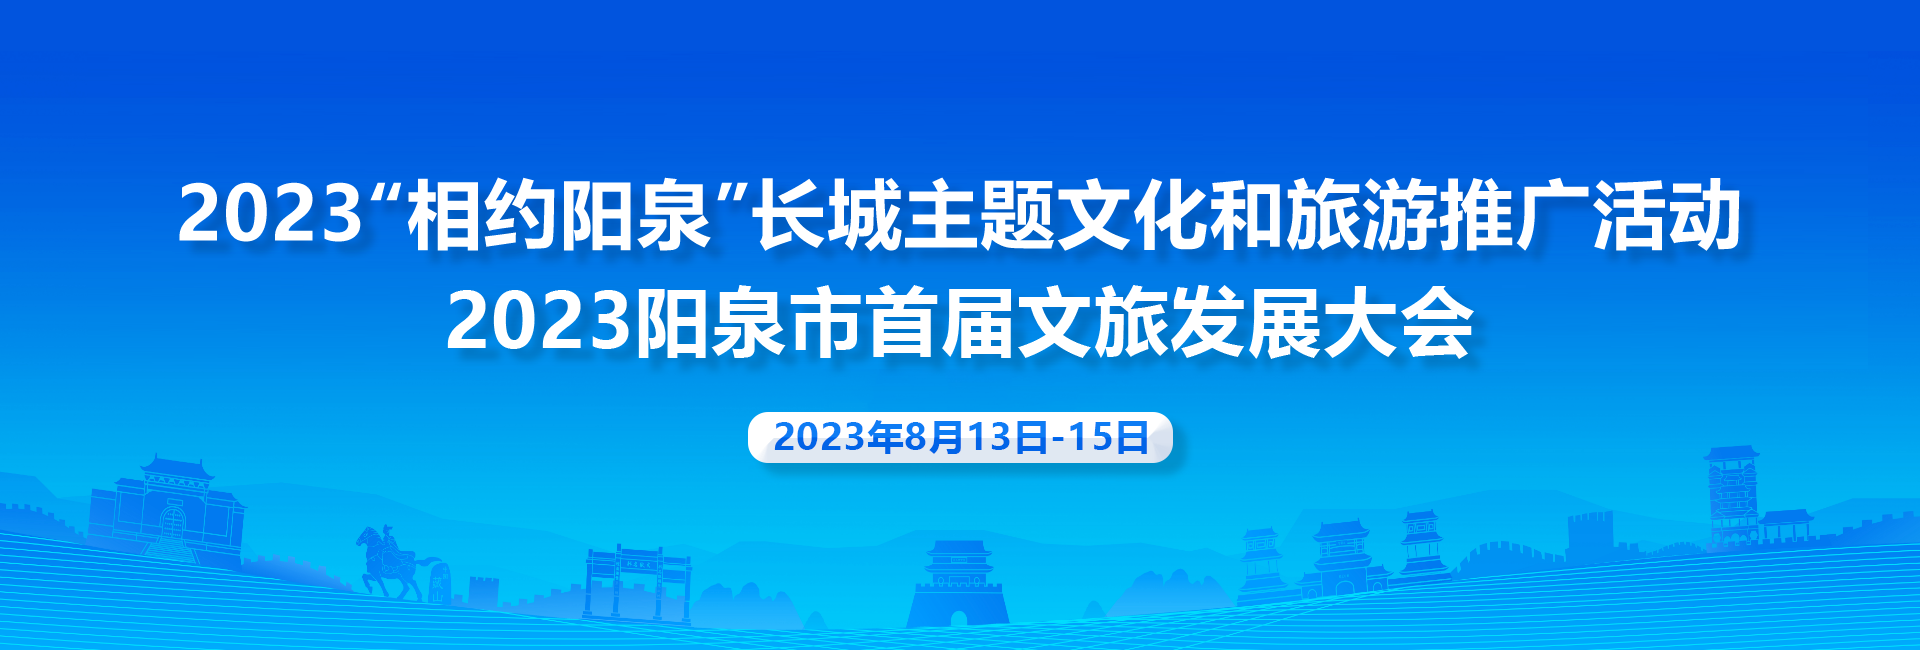 2023阳泉市首届文旅发展大会